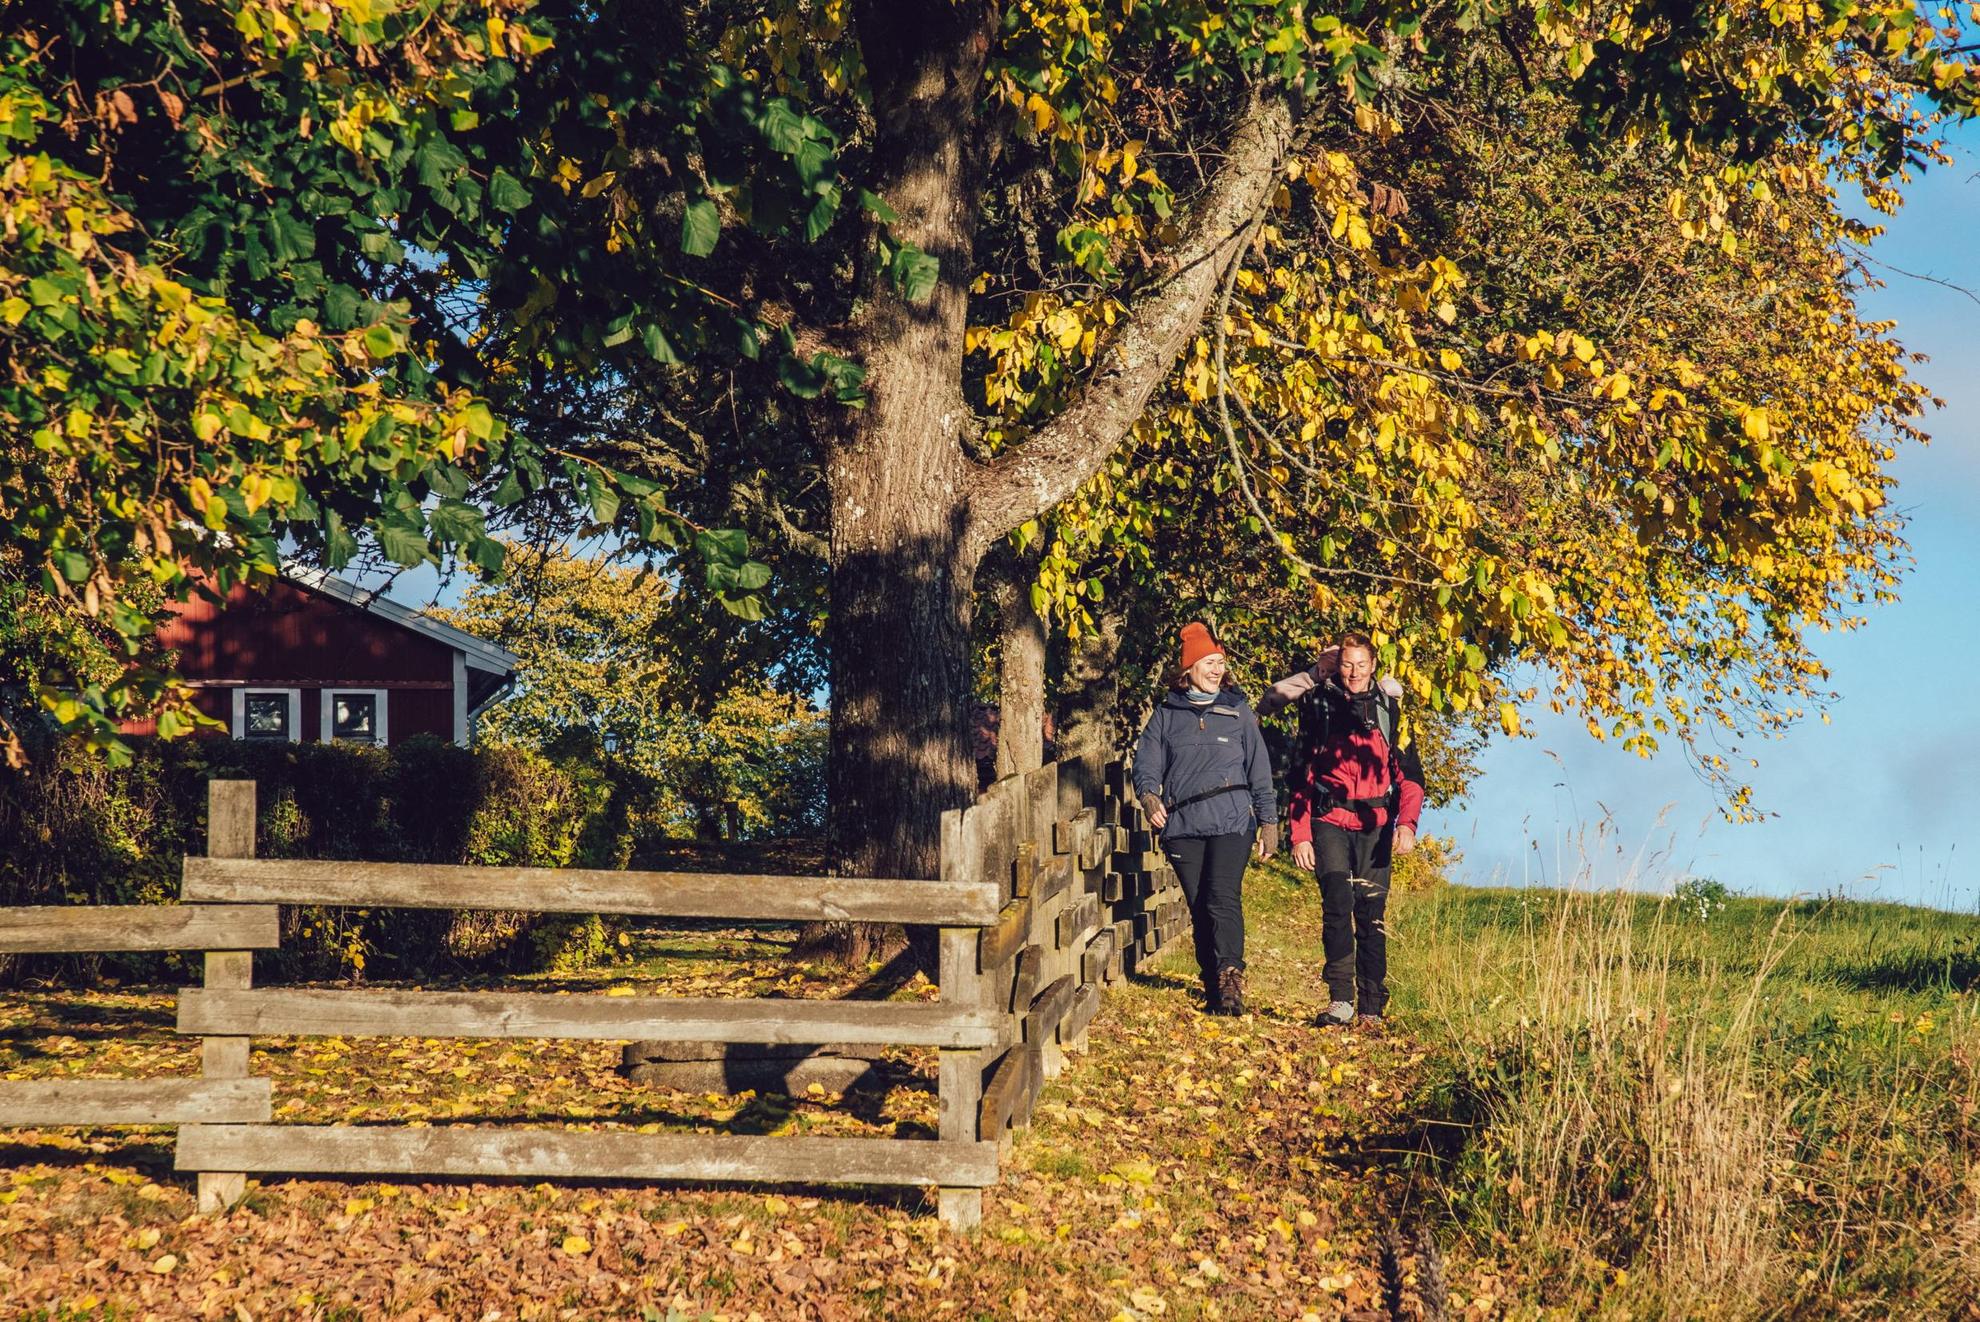 Deux personnes sont en train de marcher à côté d'une barrière en bois par une belle journée d'automne ensoleillée.